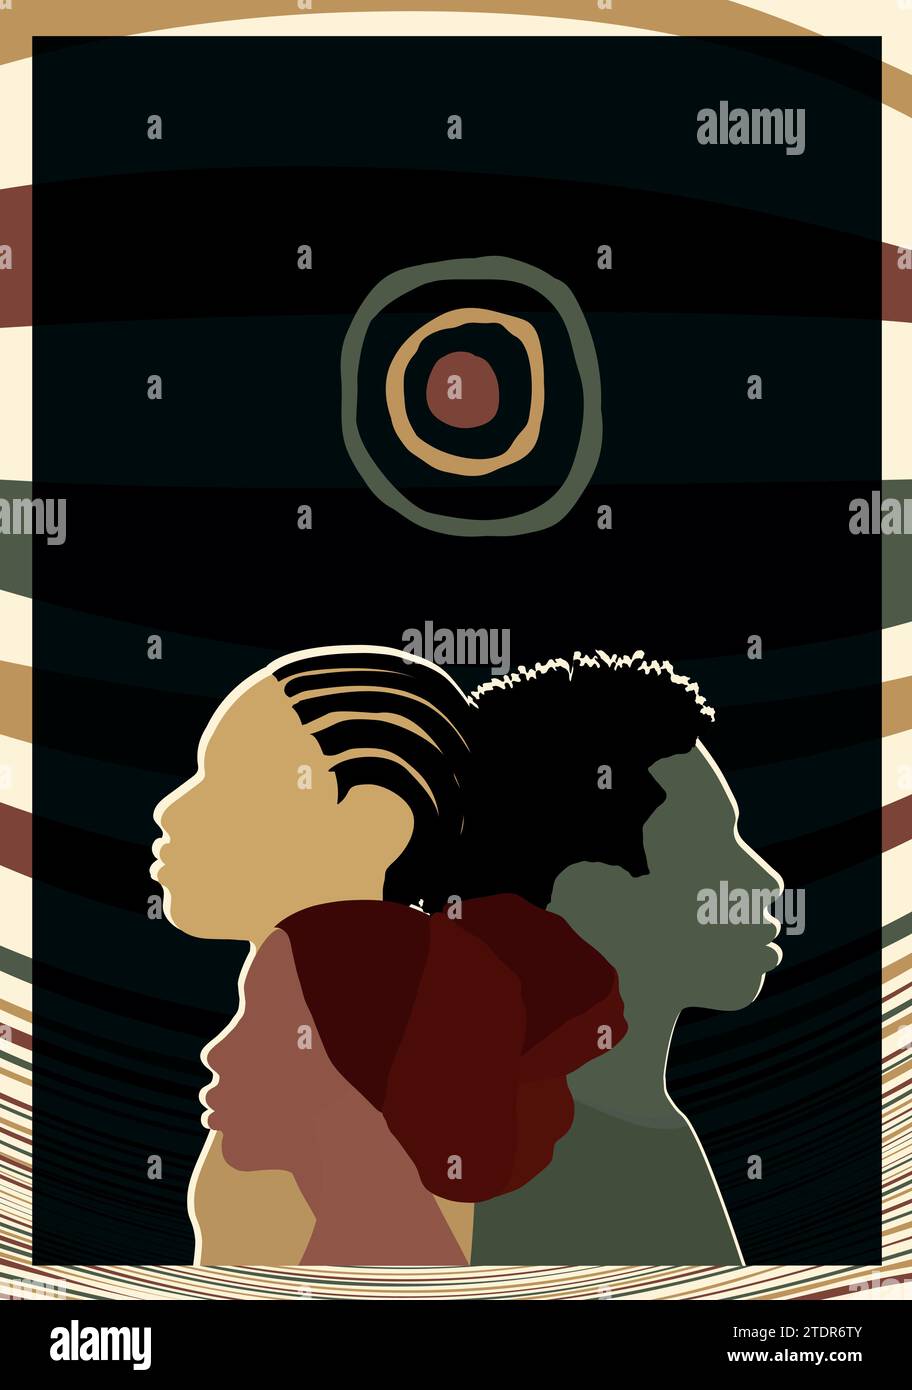 Profilo silhouette persone africane e afroamericane. Black History Month Event.gruppo etnico nero uomo e donna. Uguaglianza razziale - giustizia. Poster Illustrazione Vettoriale